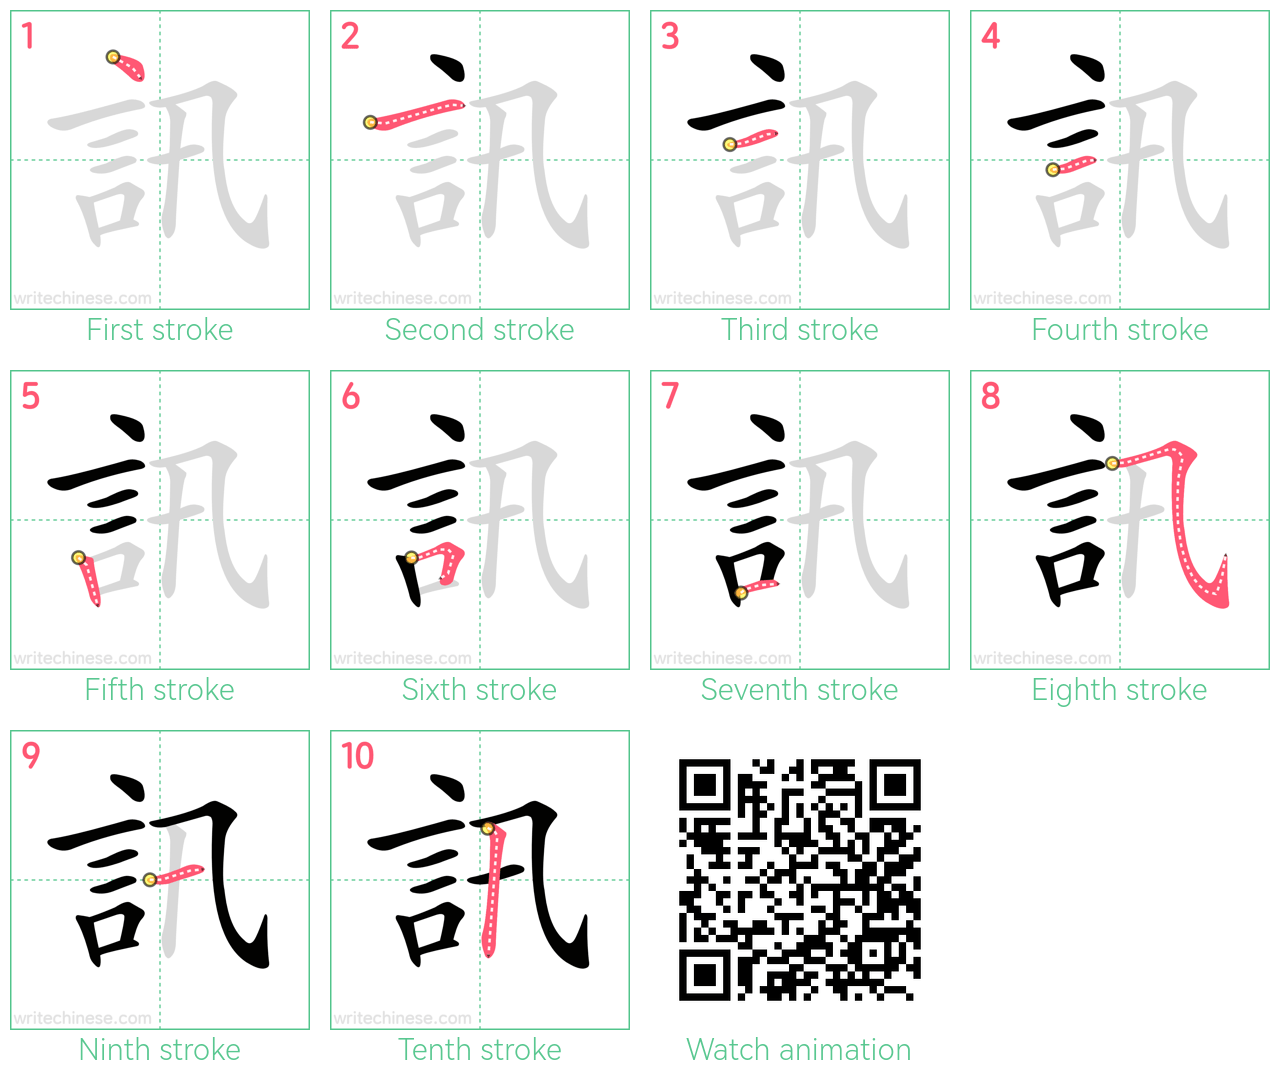 訊 step-by-step stroke order diagrams